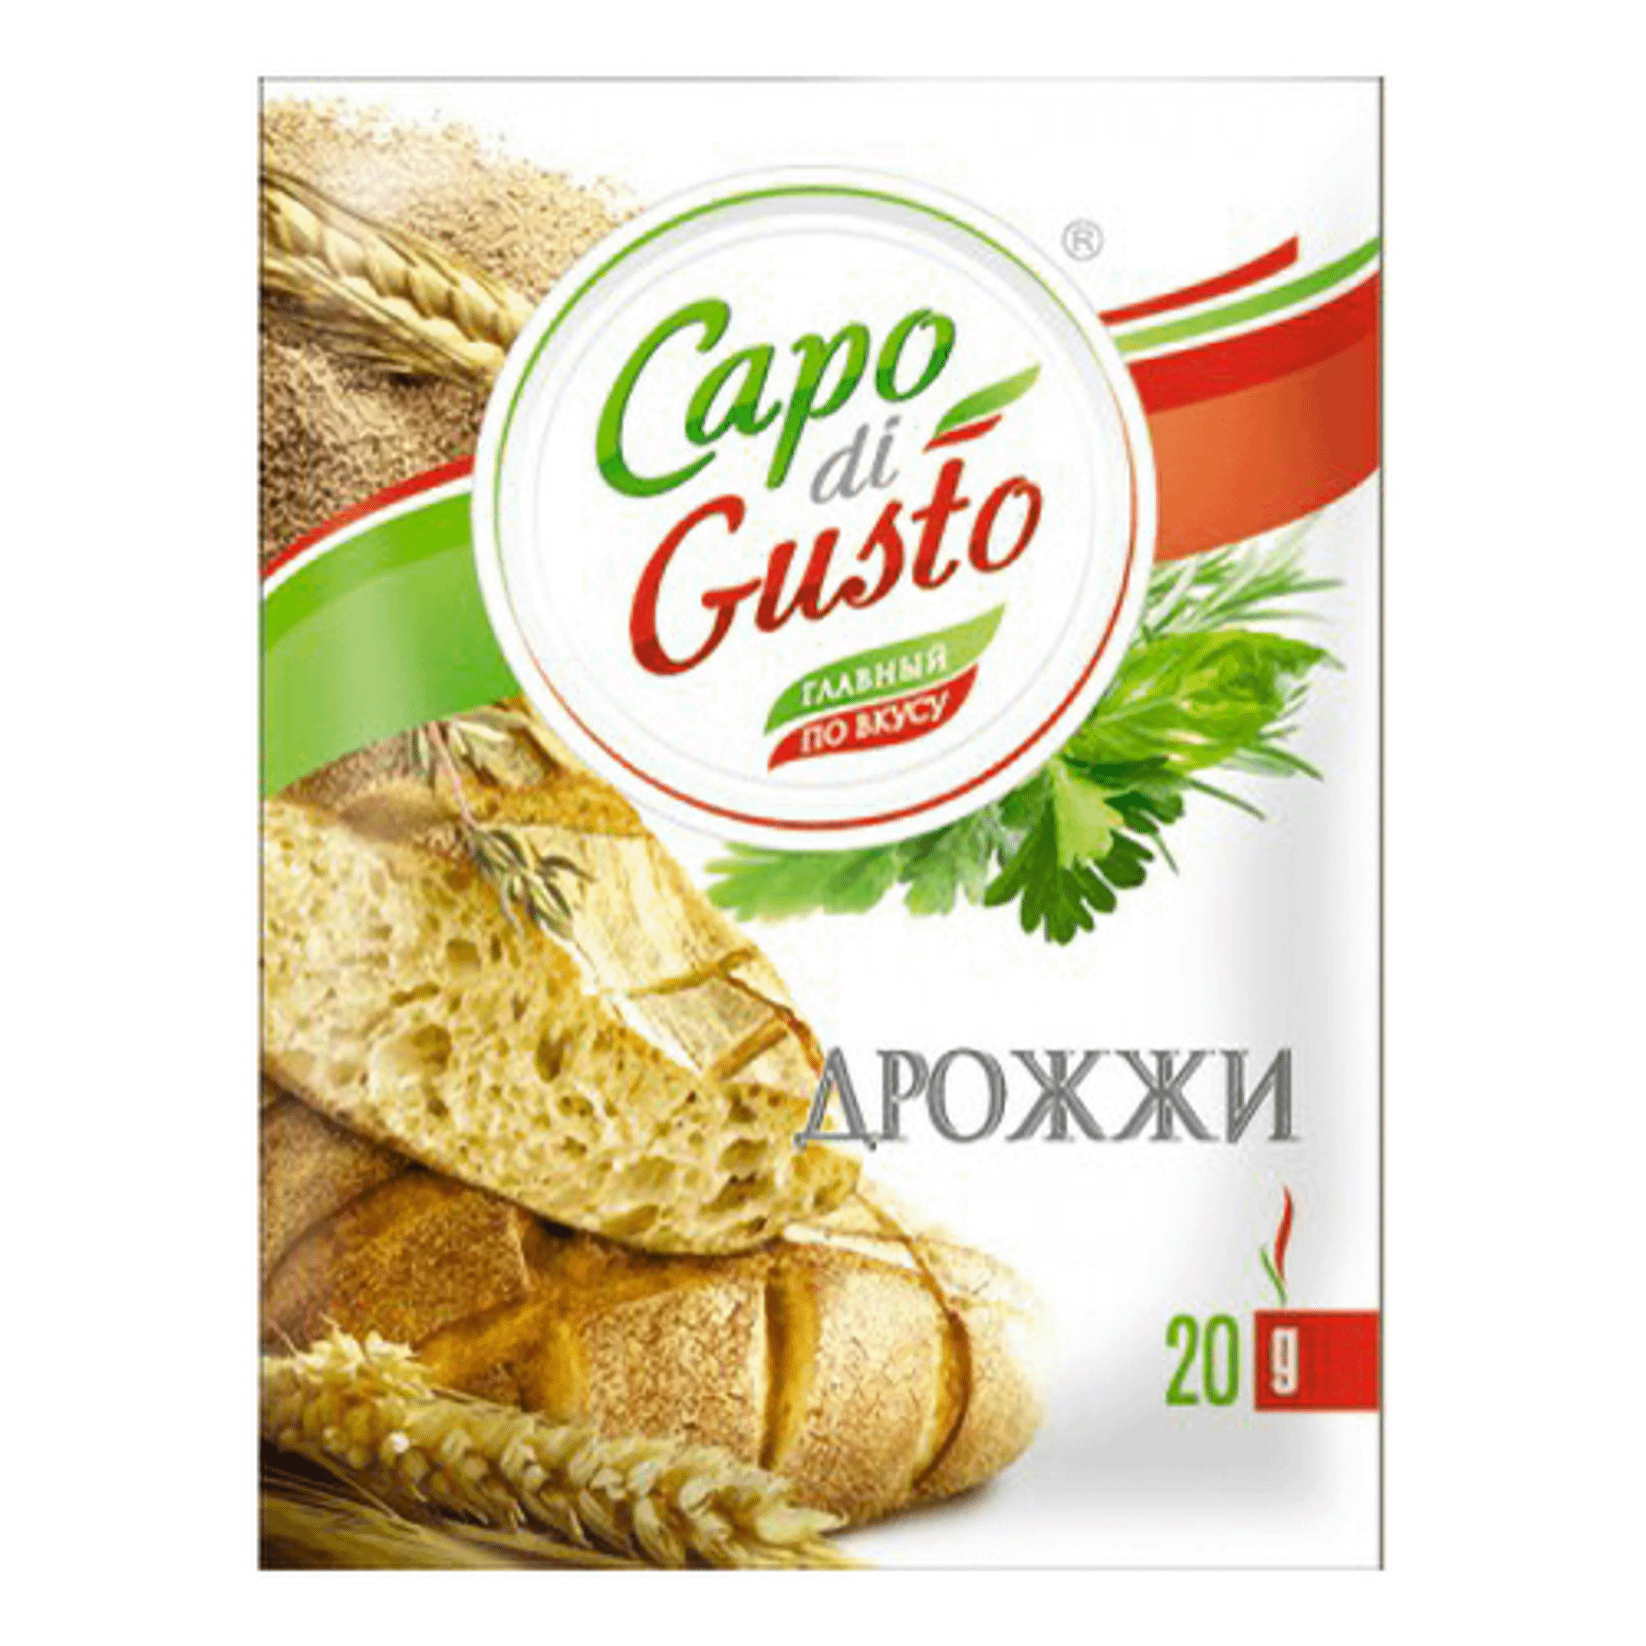 Дрожжи Capo di Gusto быстрорастворимые 20 г дрожжи сухие saf instant хлебопекарные инстантные 500 гр